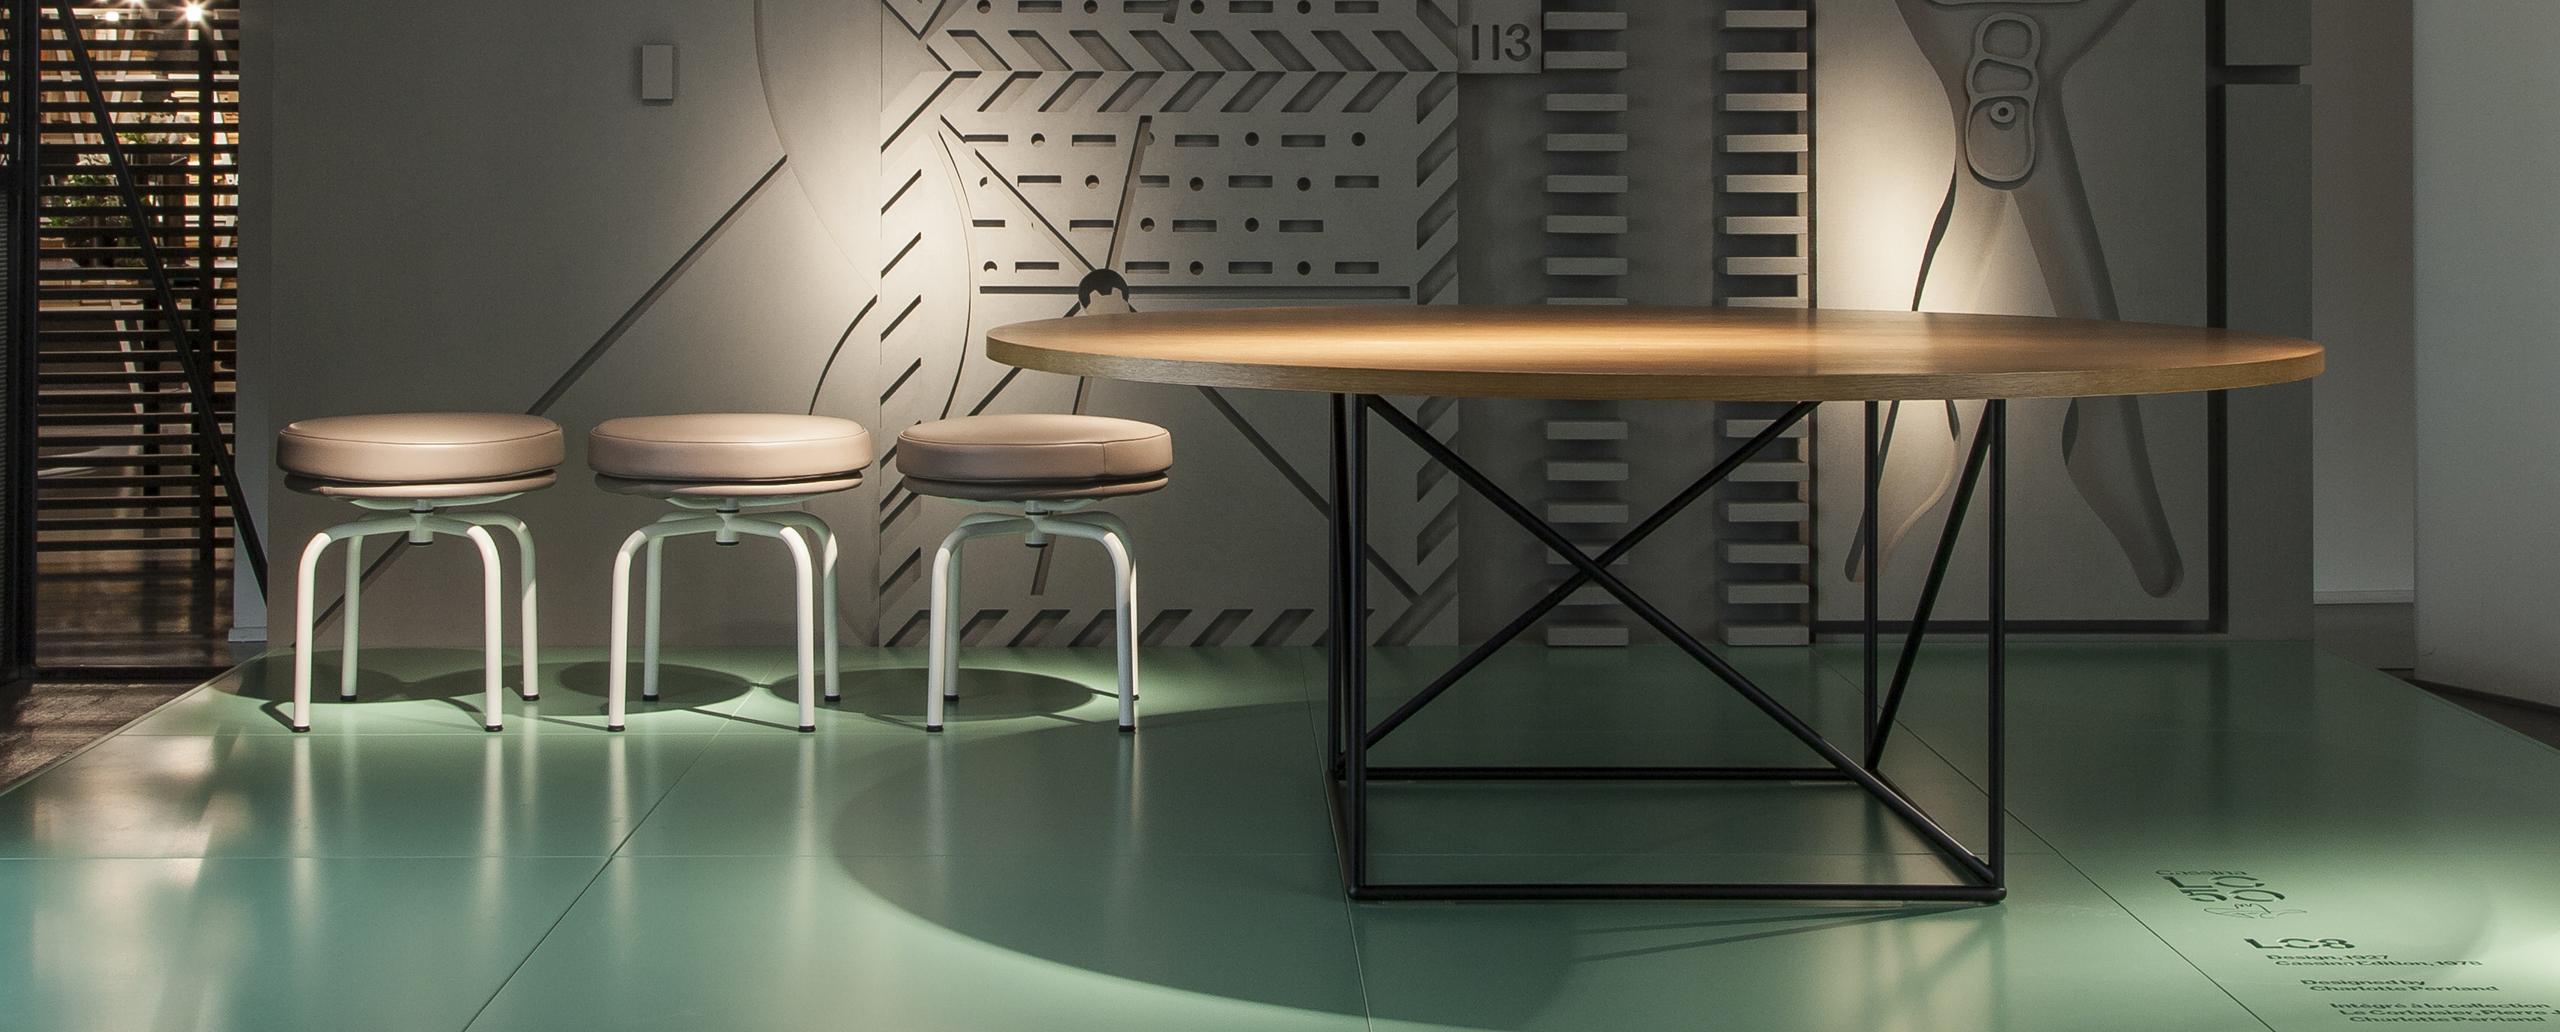 Table conçue par Le Corbusier en 1958. Relancé en 2010.
Fabriqué par Cassina en Italie.

Organique et pourtant rationnelle, cette table a été conçue par Le Corbusier en 1958. Sa construction distinctive découle de deux figures géométriques : le